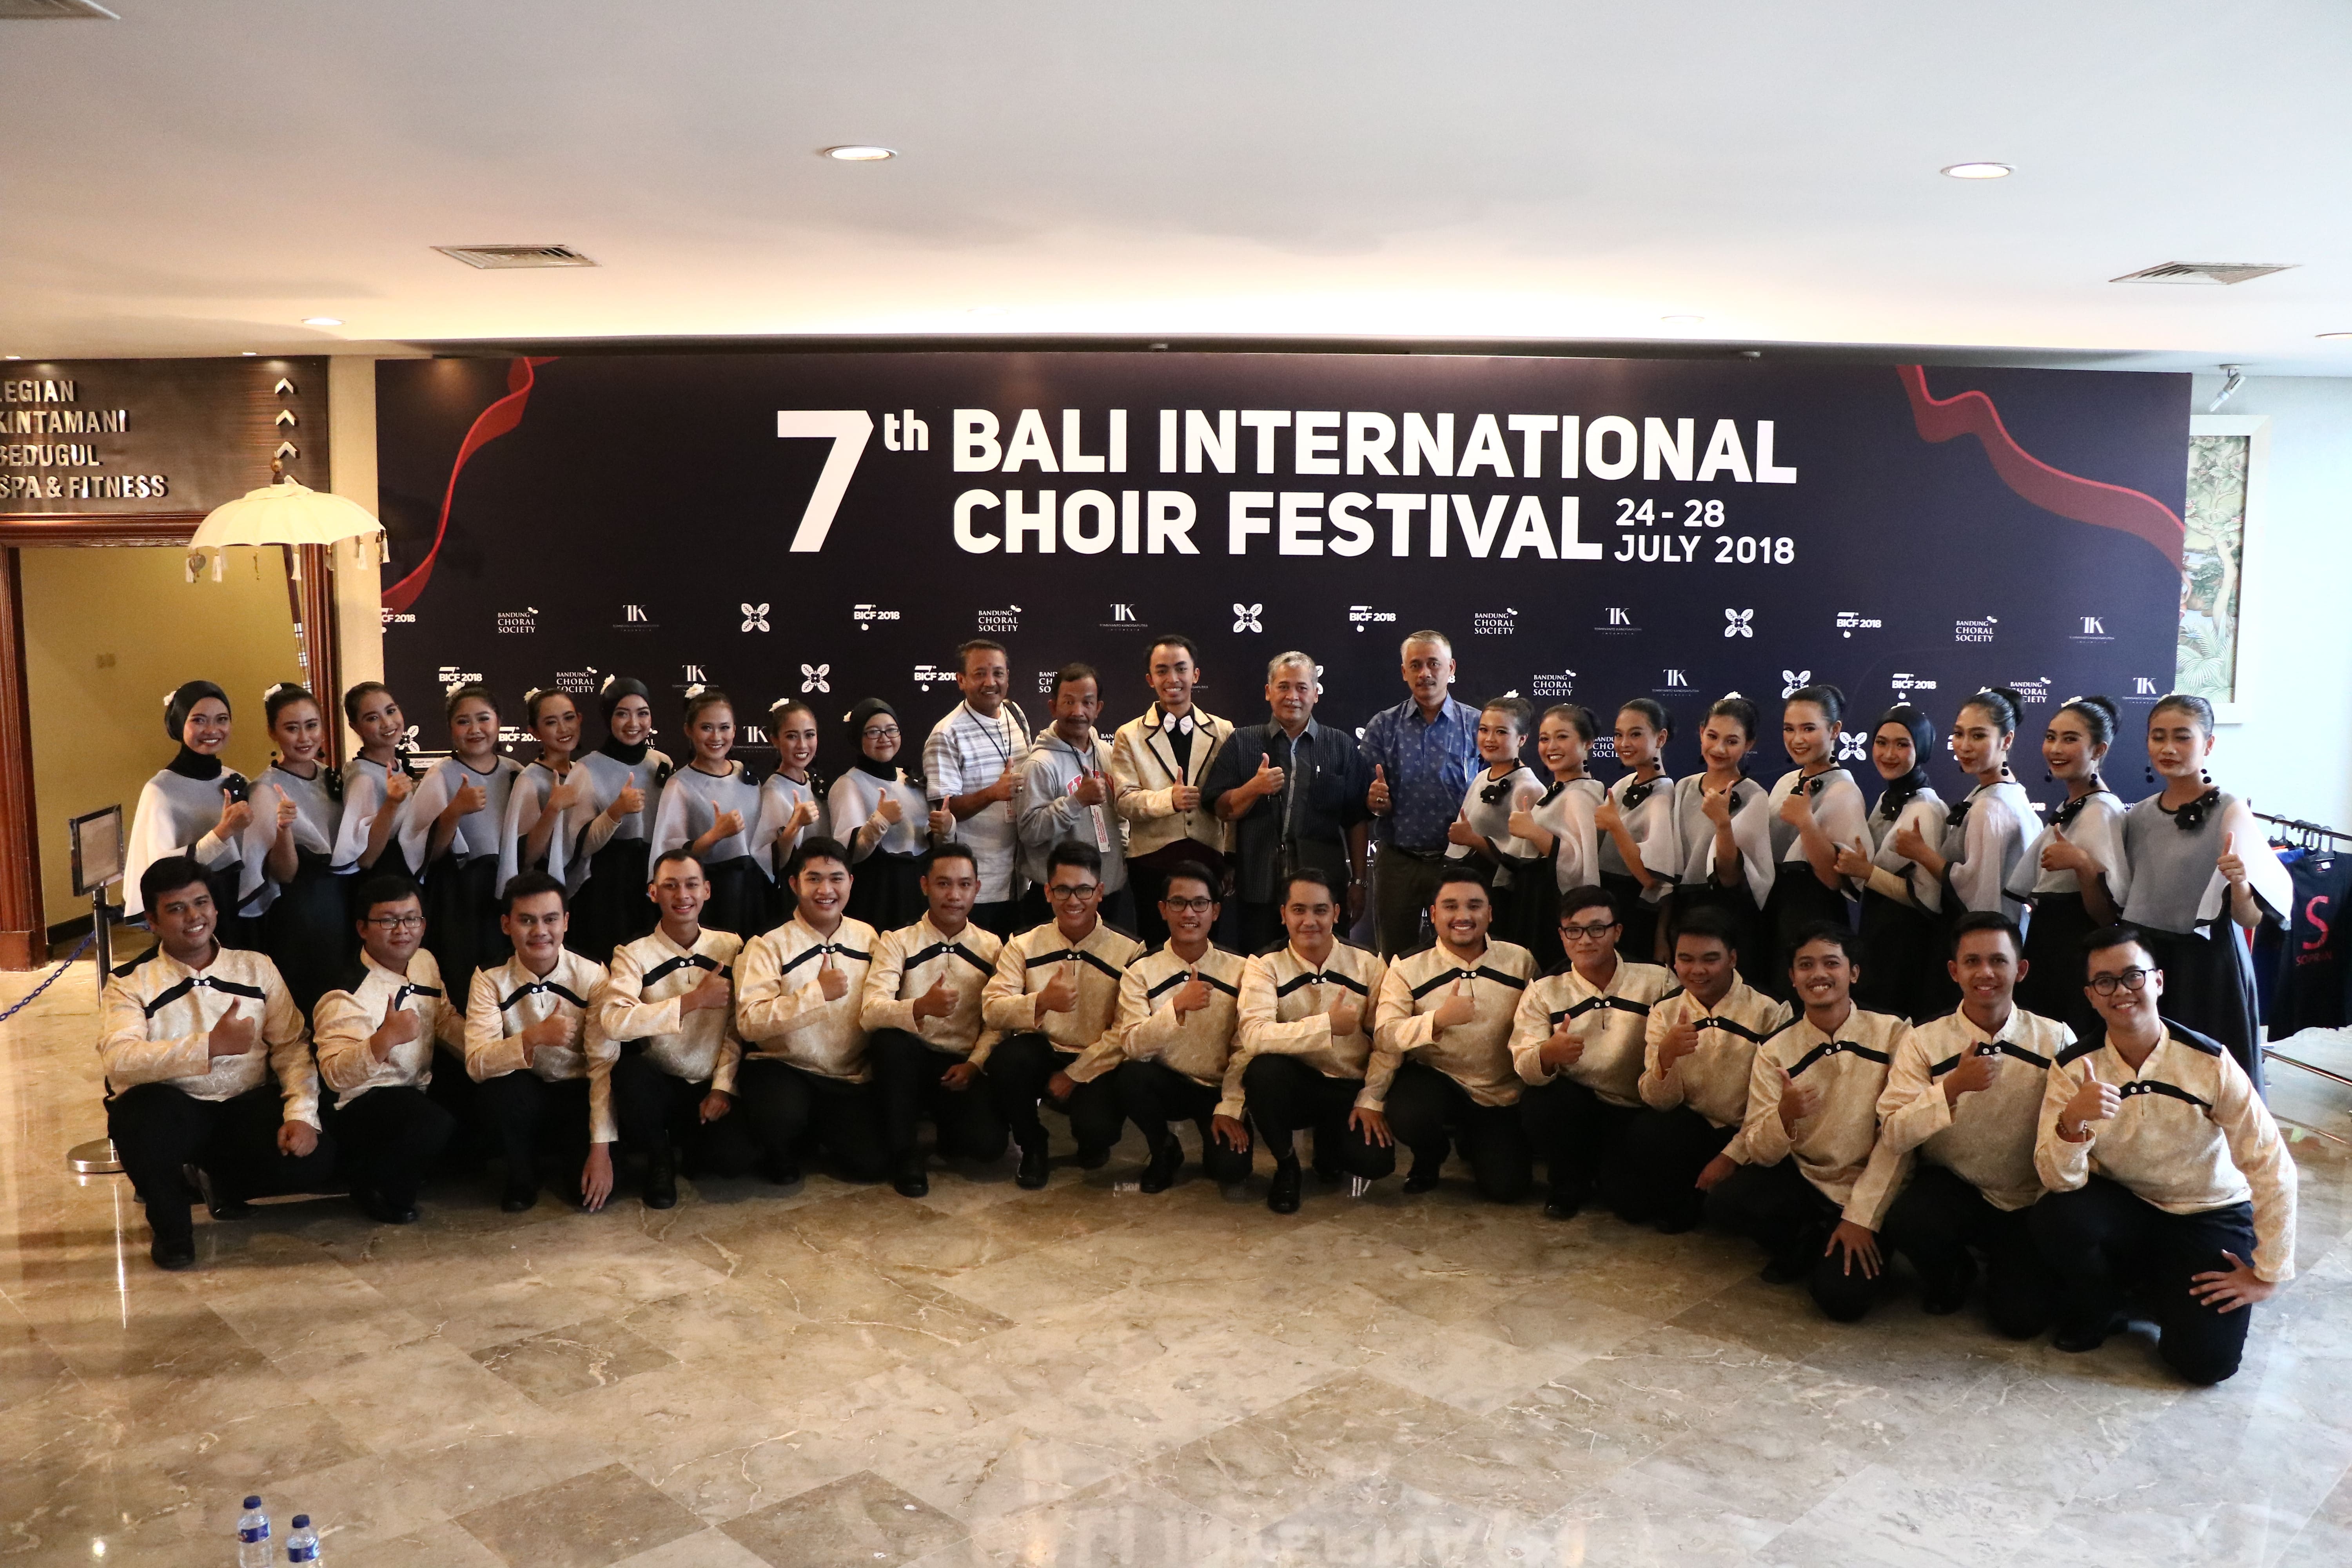 Foto 7th Bali International Choir Festival 2018